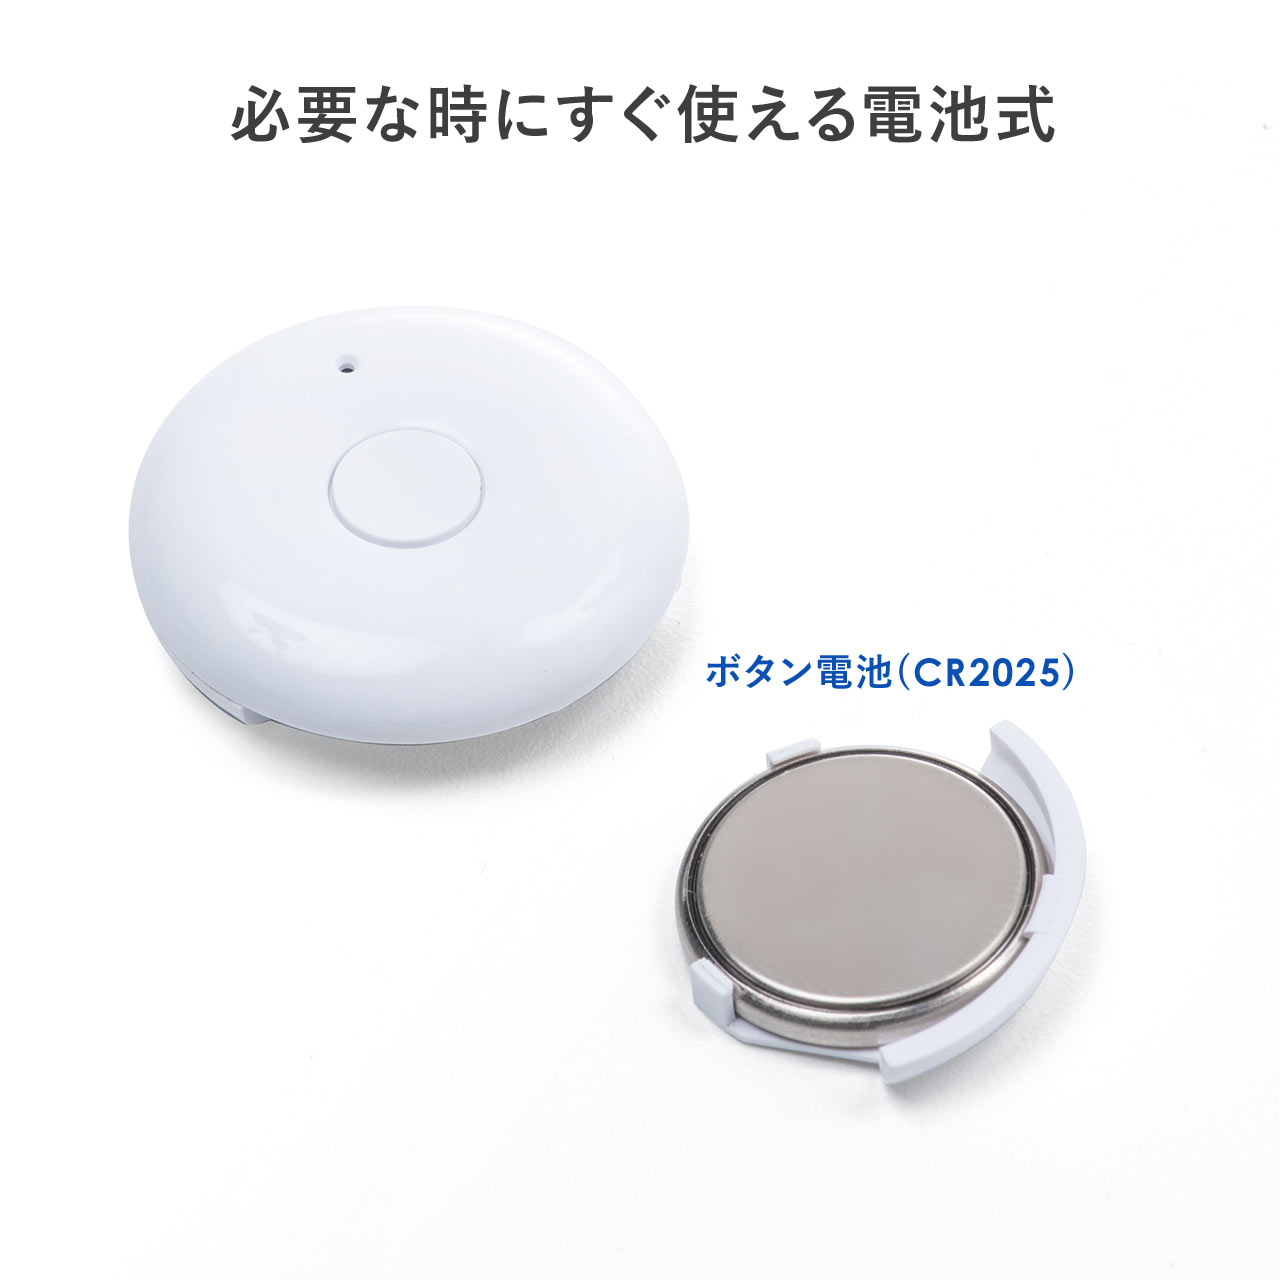 プレゼンリモコン Bluetooth接続 ワンボタン パワポリモコン 200-LPP045